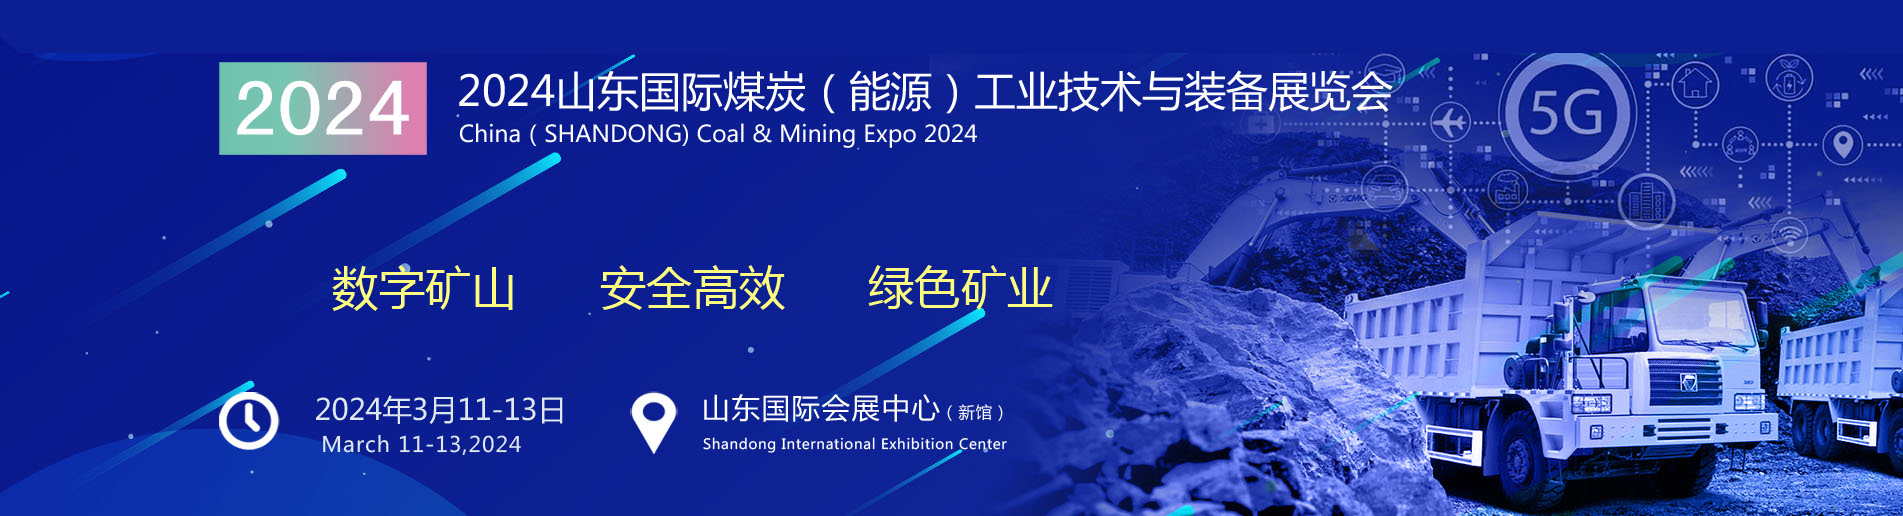 2024山东国际煤炭（能源）工业技术与装备展览会